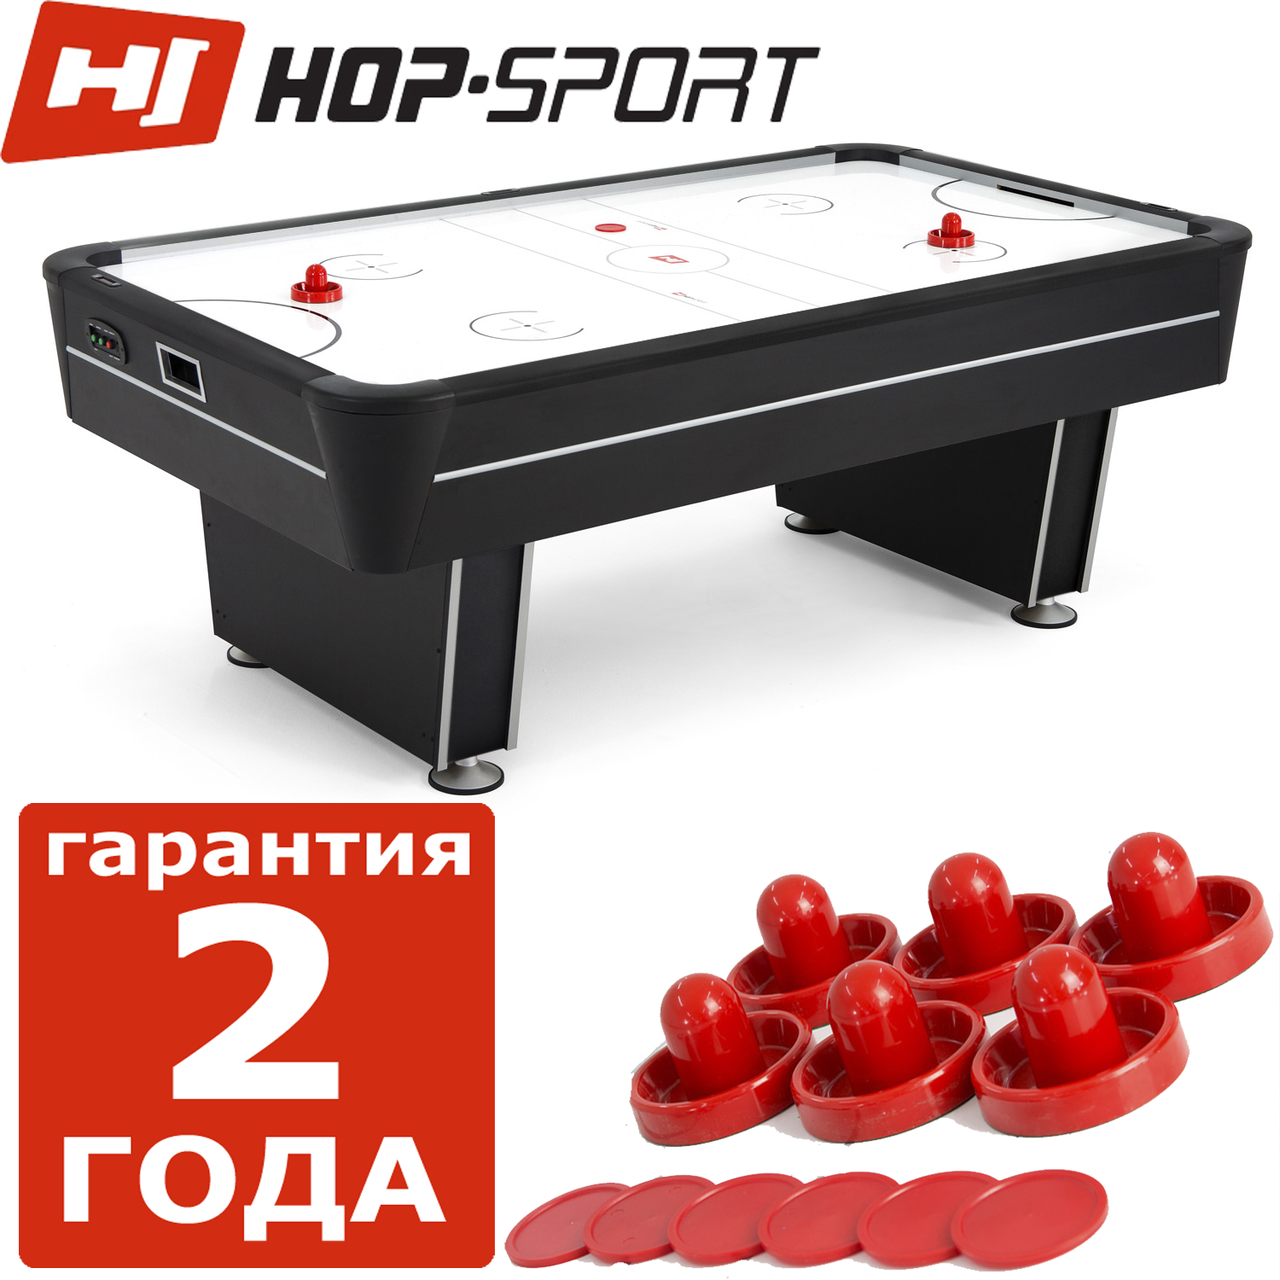 Аерохокей Hop-Sport Phoenix 7FT